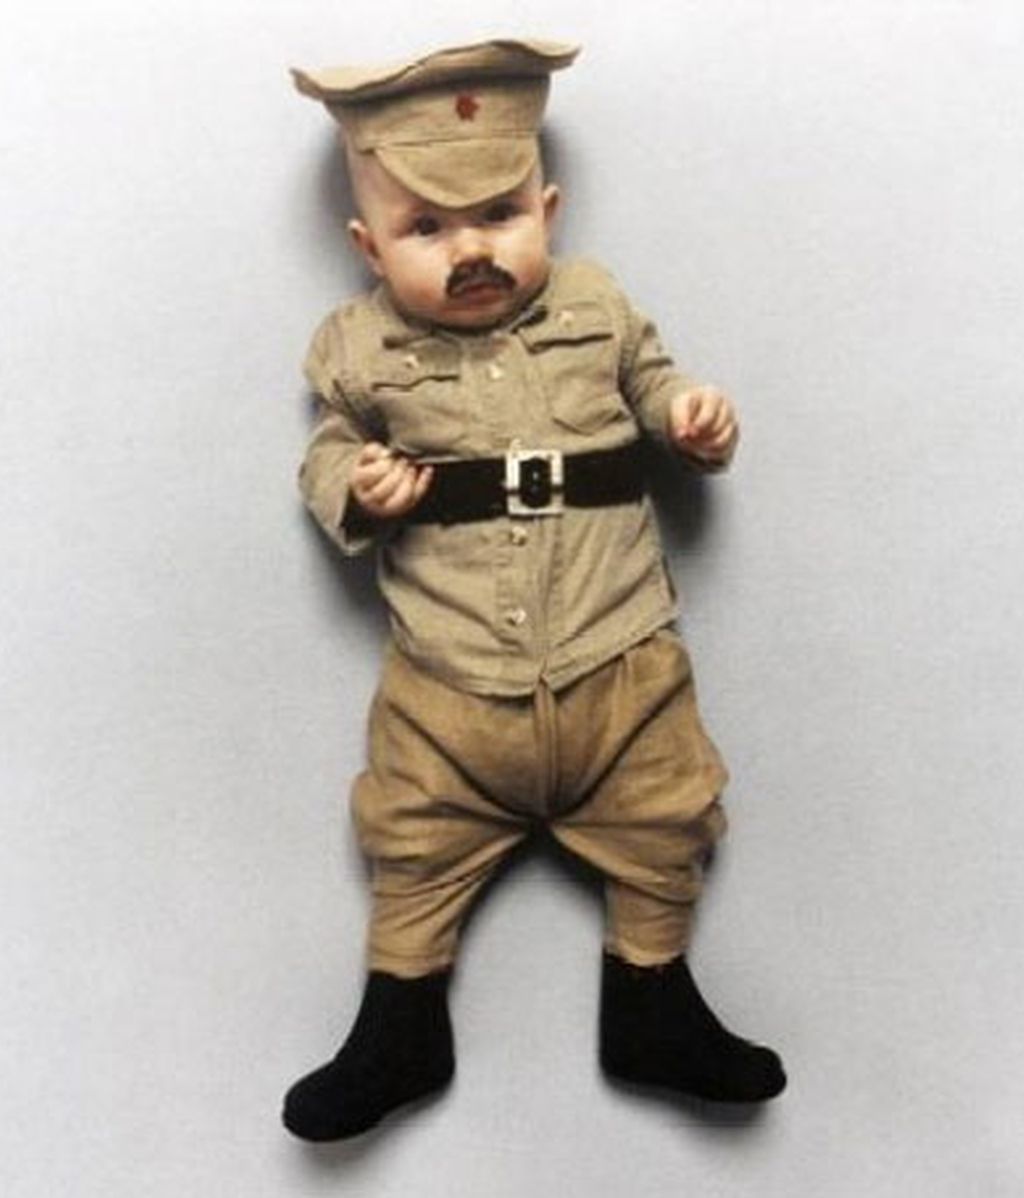 Un bebe disfrazado de Hitler... ¿arte?